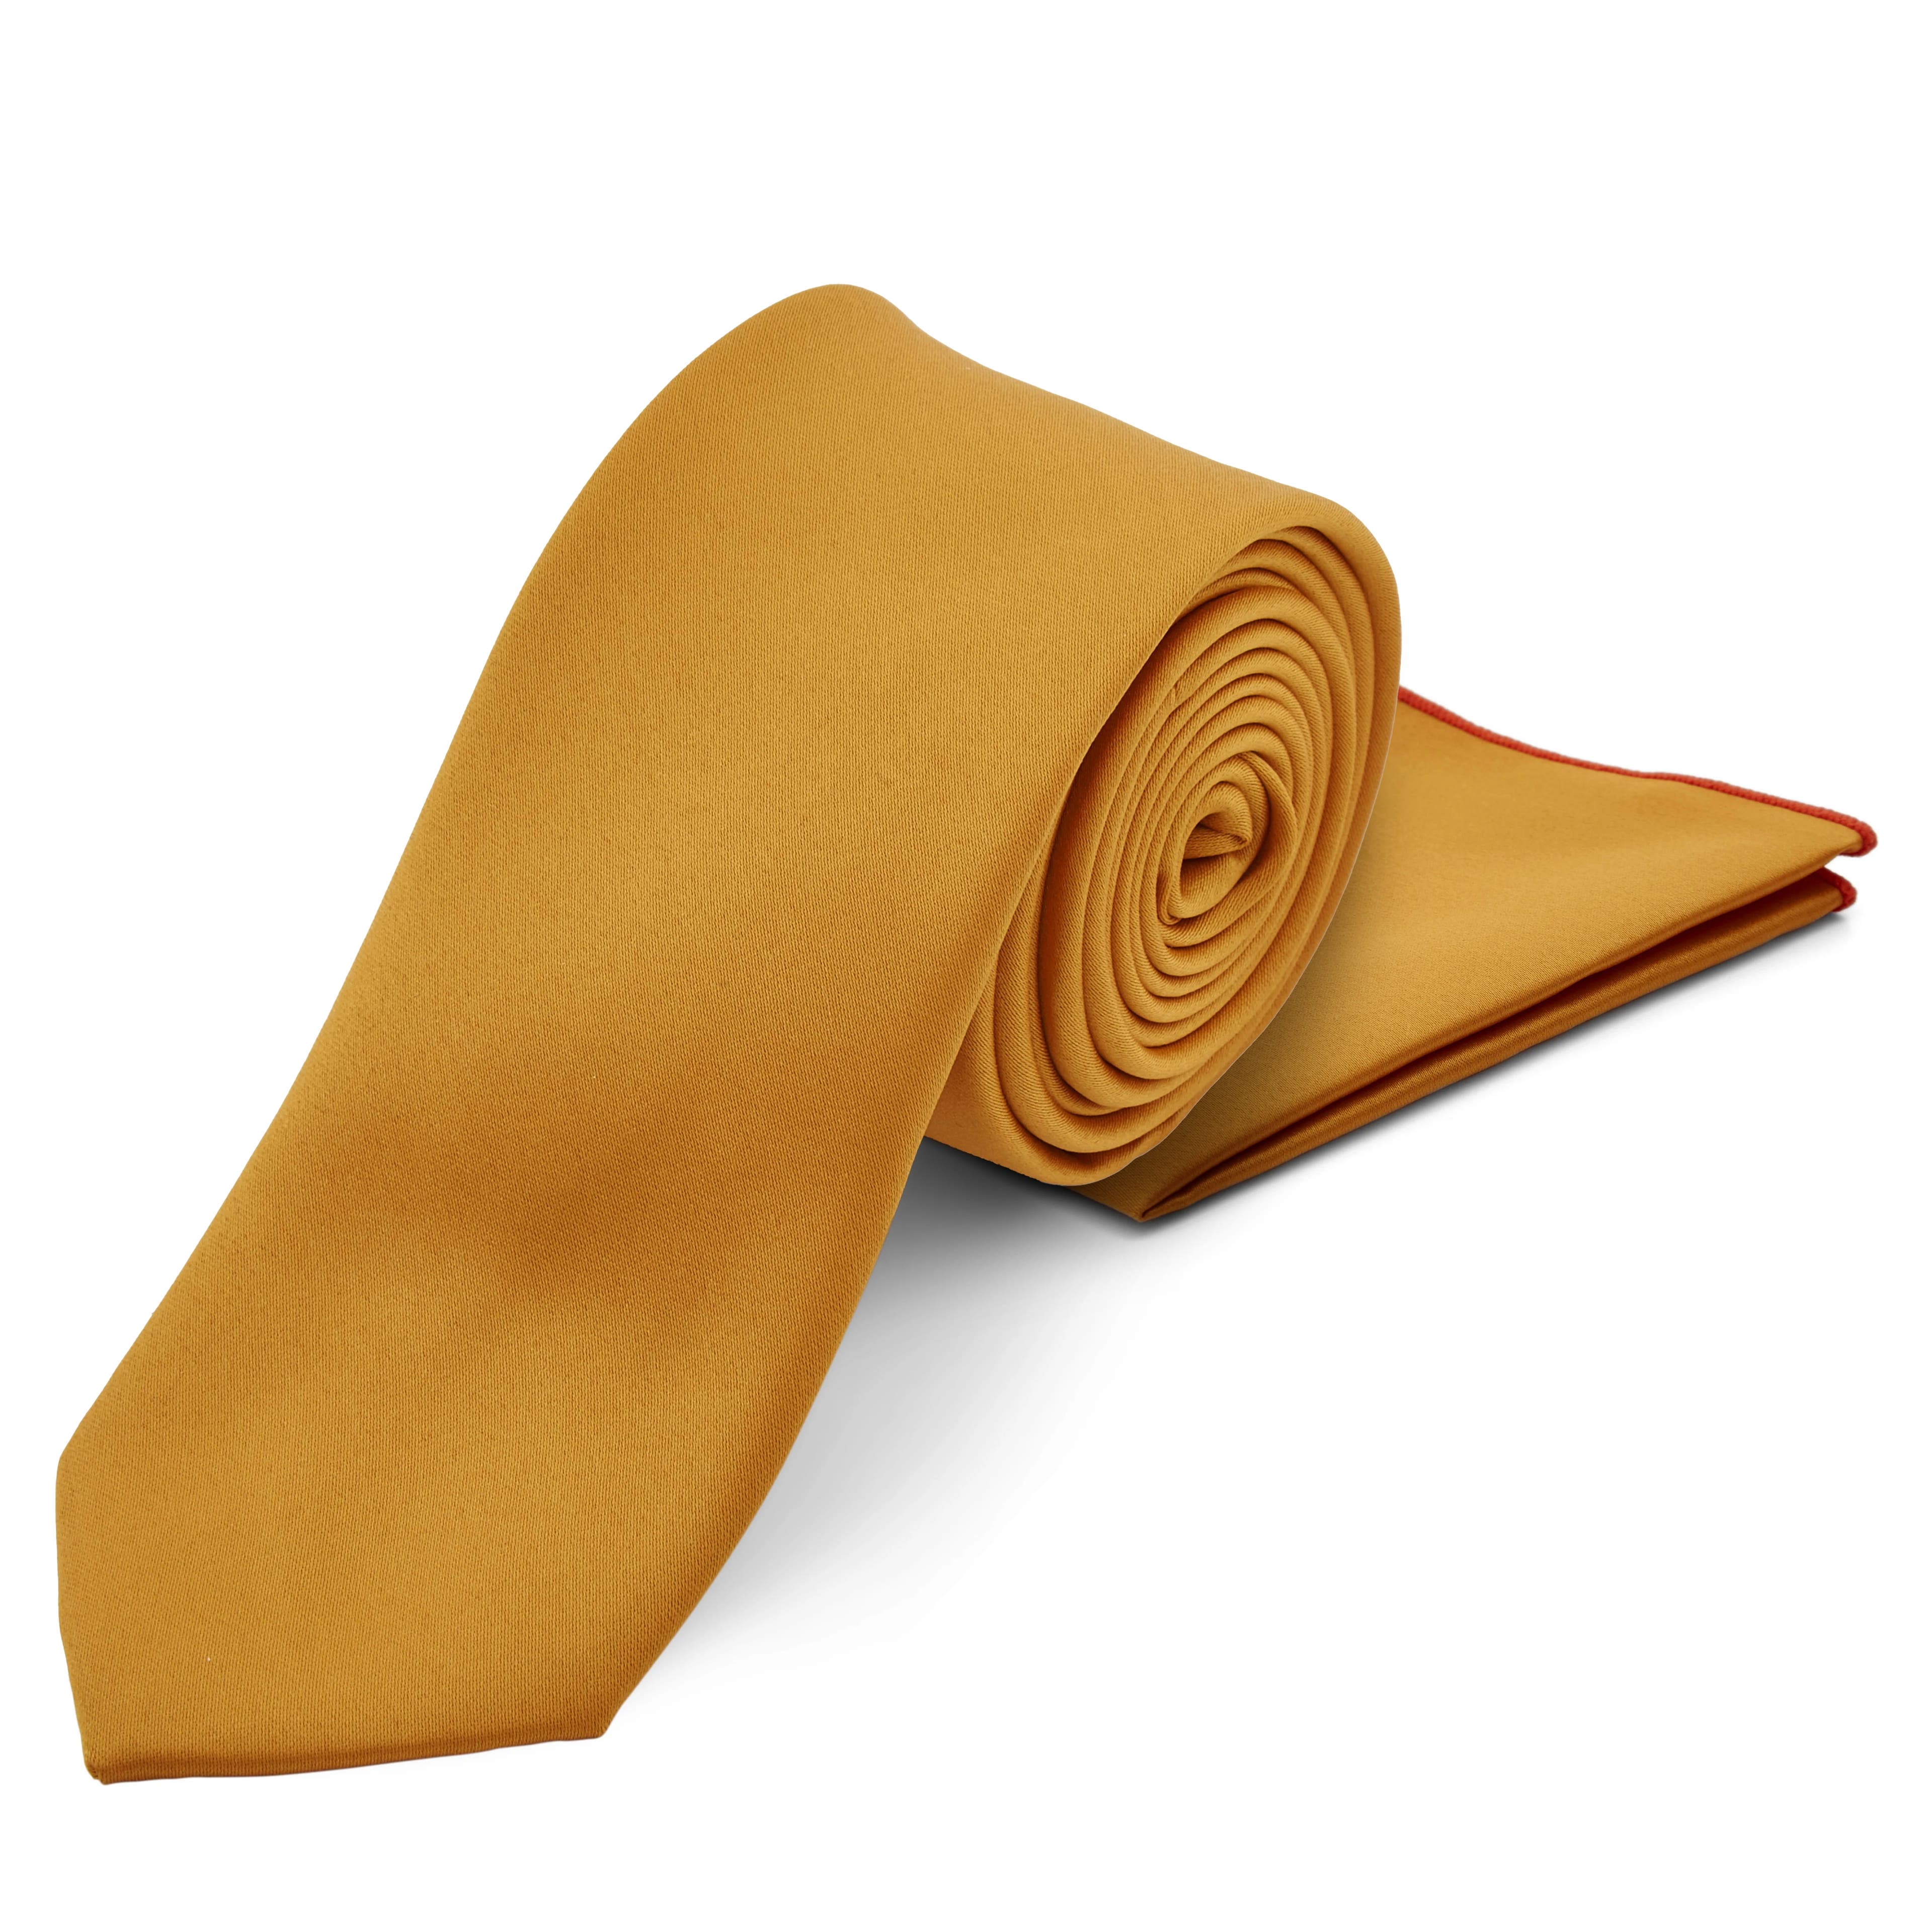 Őszi nyakkendő és díszzsebkendő